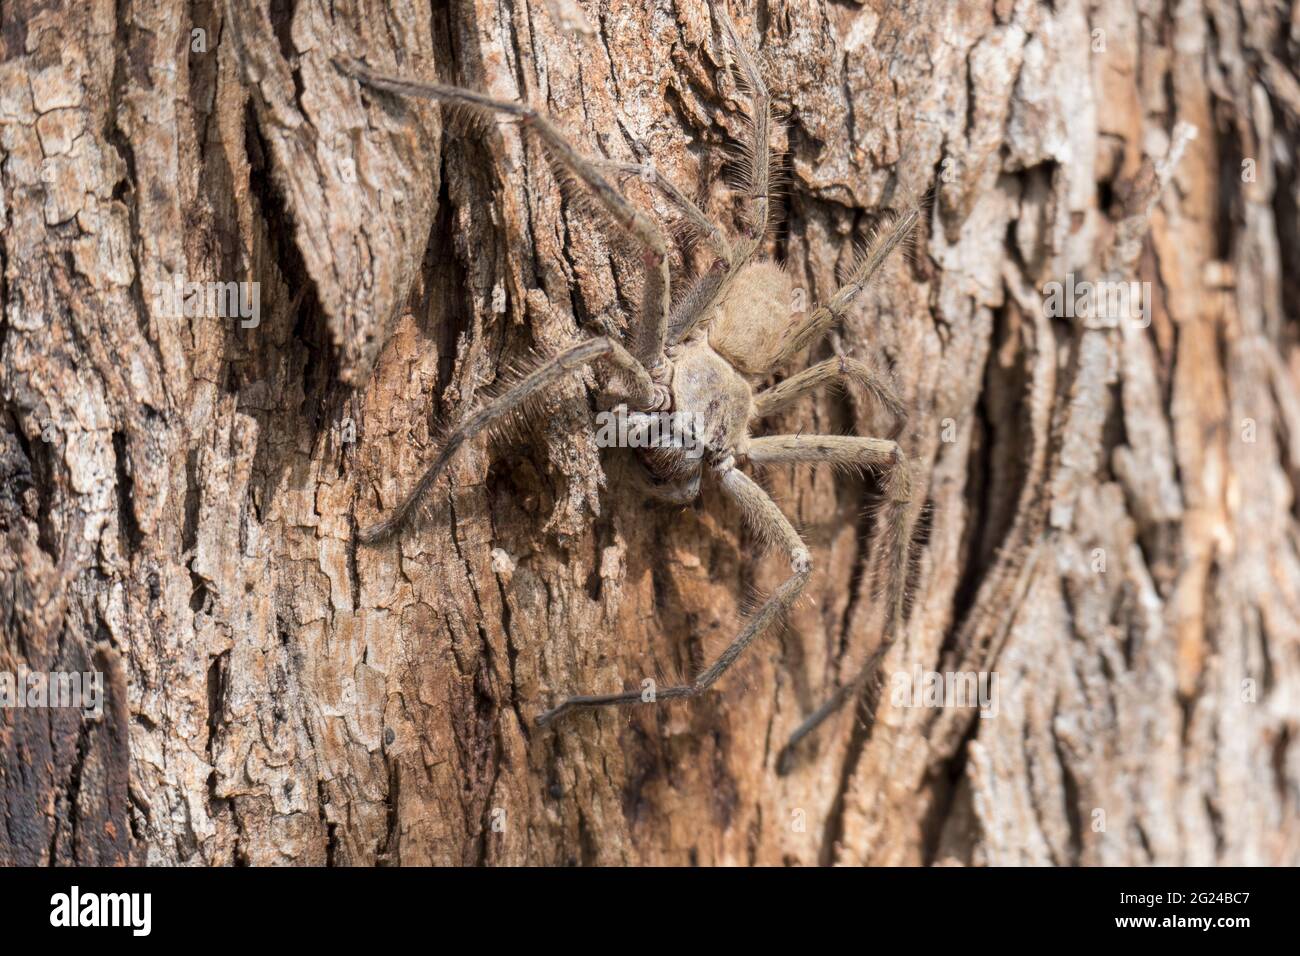 Australia, nuovo Galles del Sud, Kandos, primo piano di Huntsman Spider (Heteropoda venatoria) sulla corteccia dell'albero Foto Stock